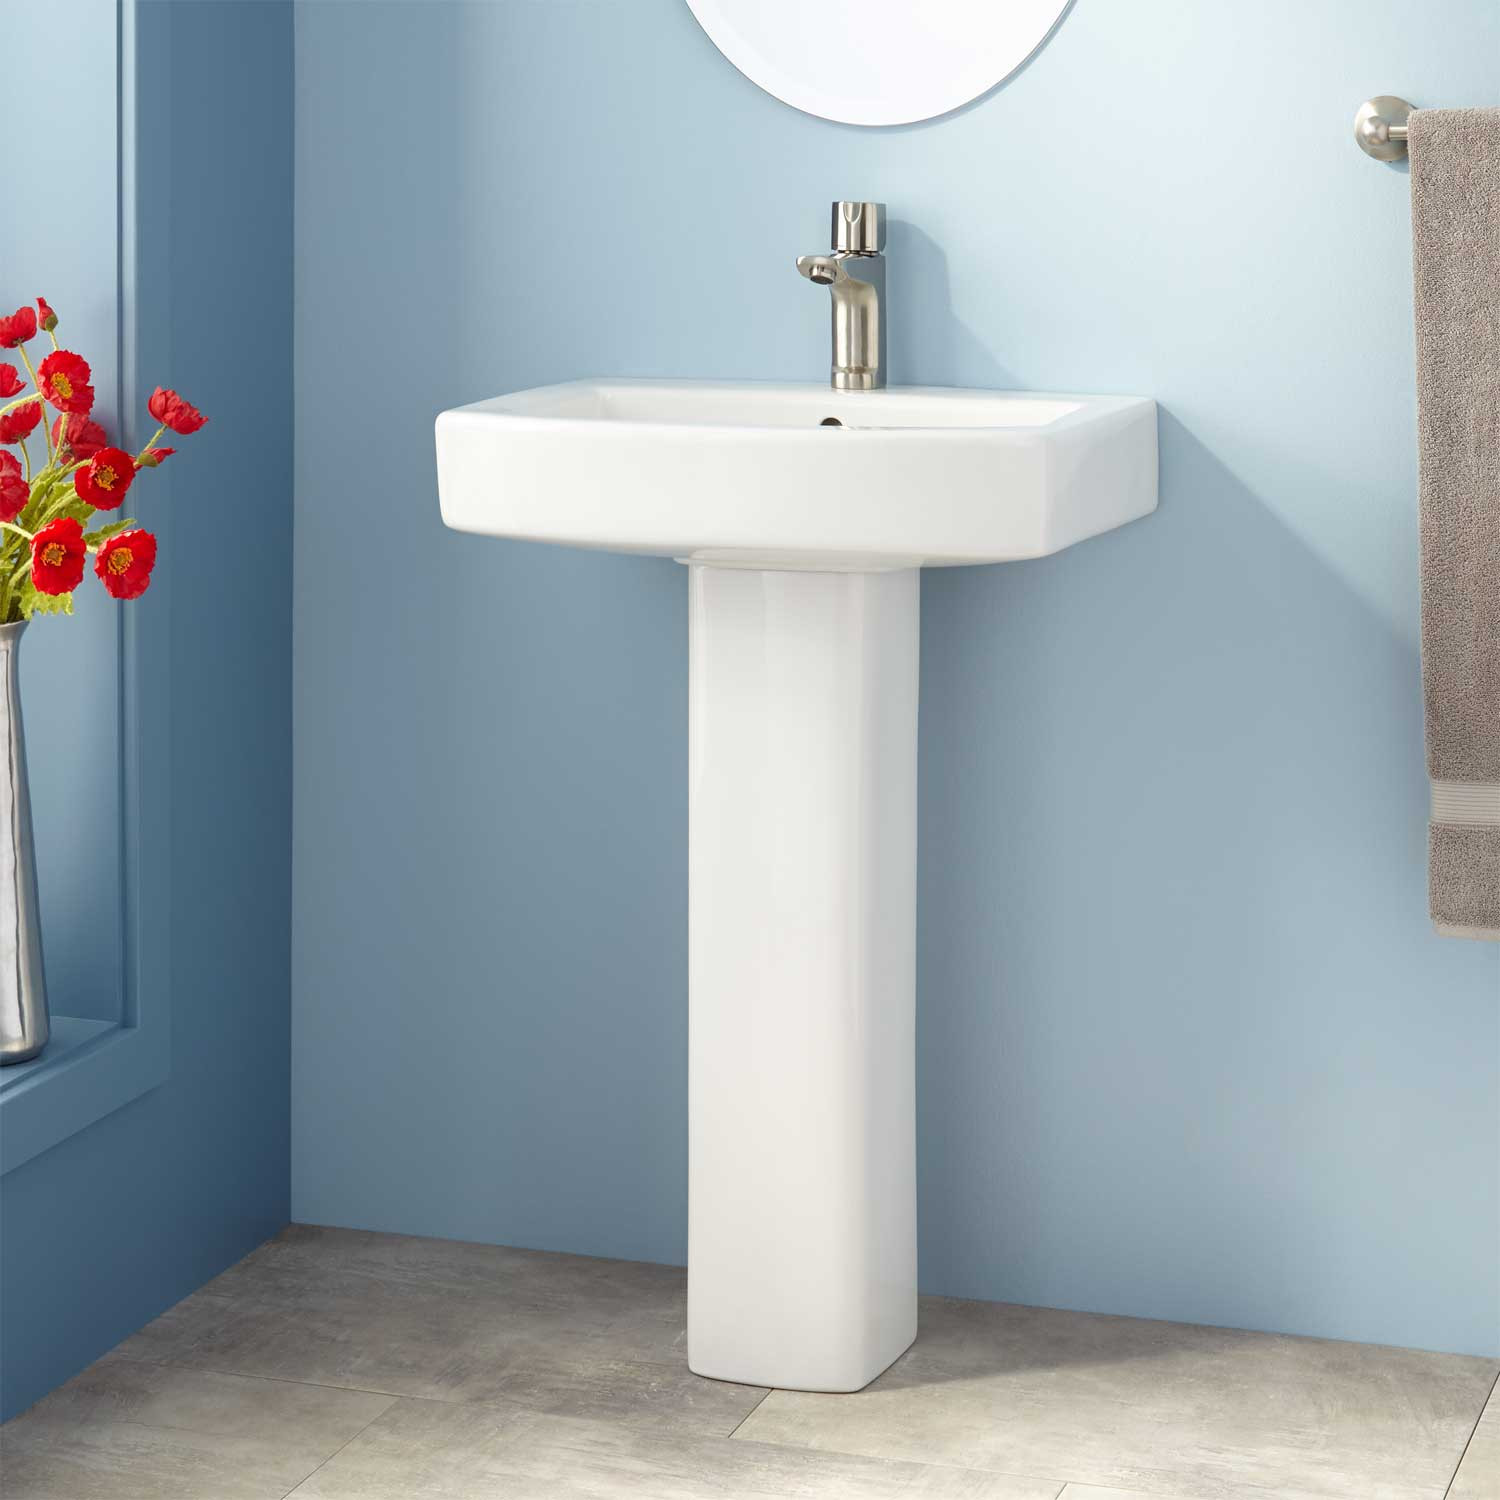 Best ideas about Pedestal Bathroom Sinks
. Save or Pin Medeski Porcelain Pedestal Sink Bathroom Now.